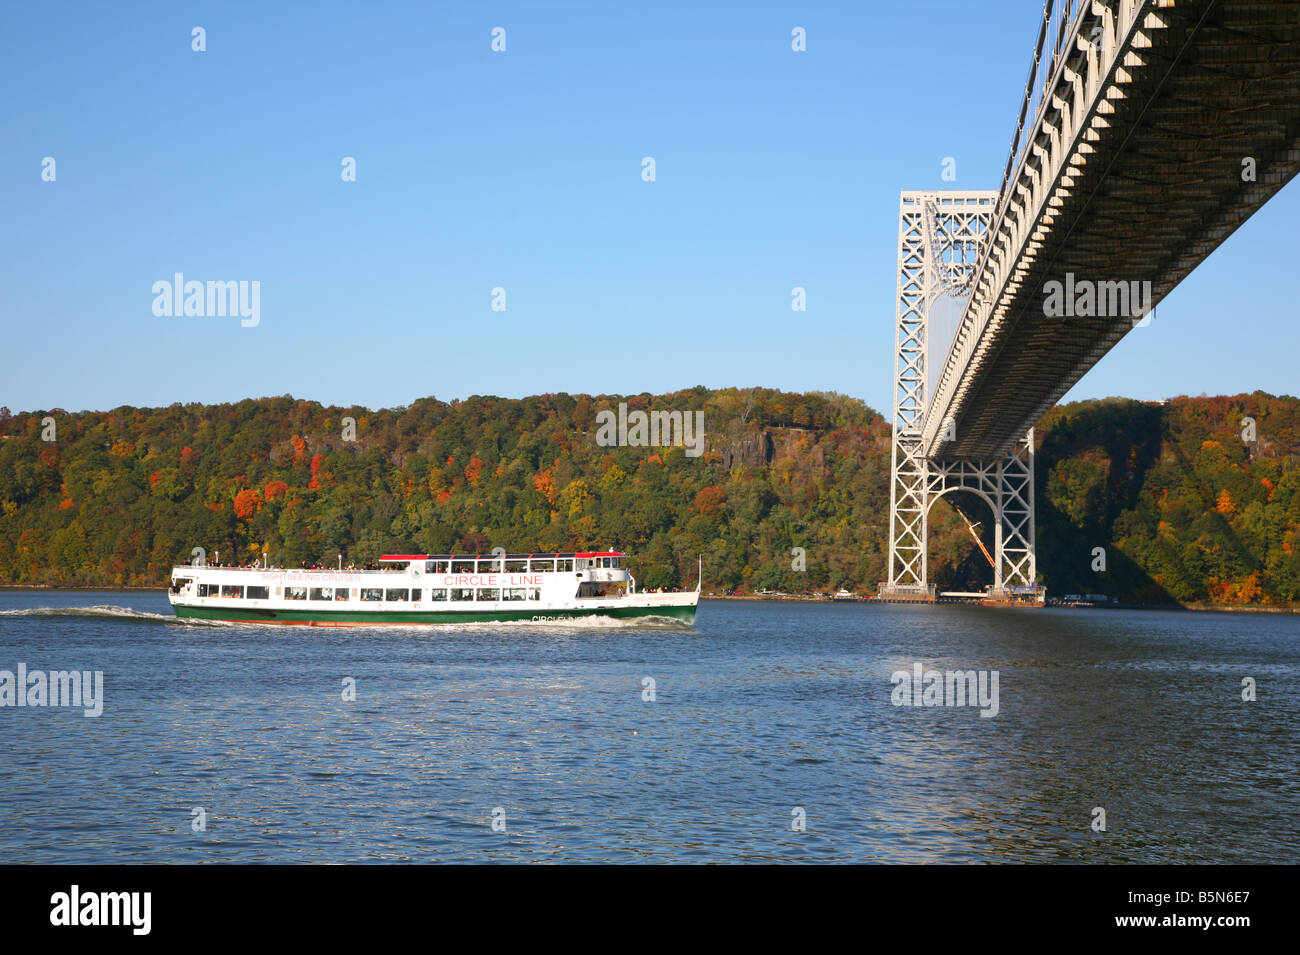 La linea di cerchio barca sul fiume Hudson si avvicina il Ponte George Washington Bridge, New York, NY, STATI UNITI D'AMERICA Foto Stock